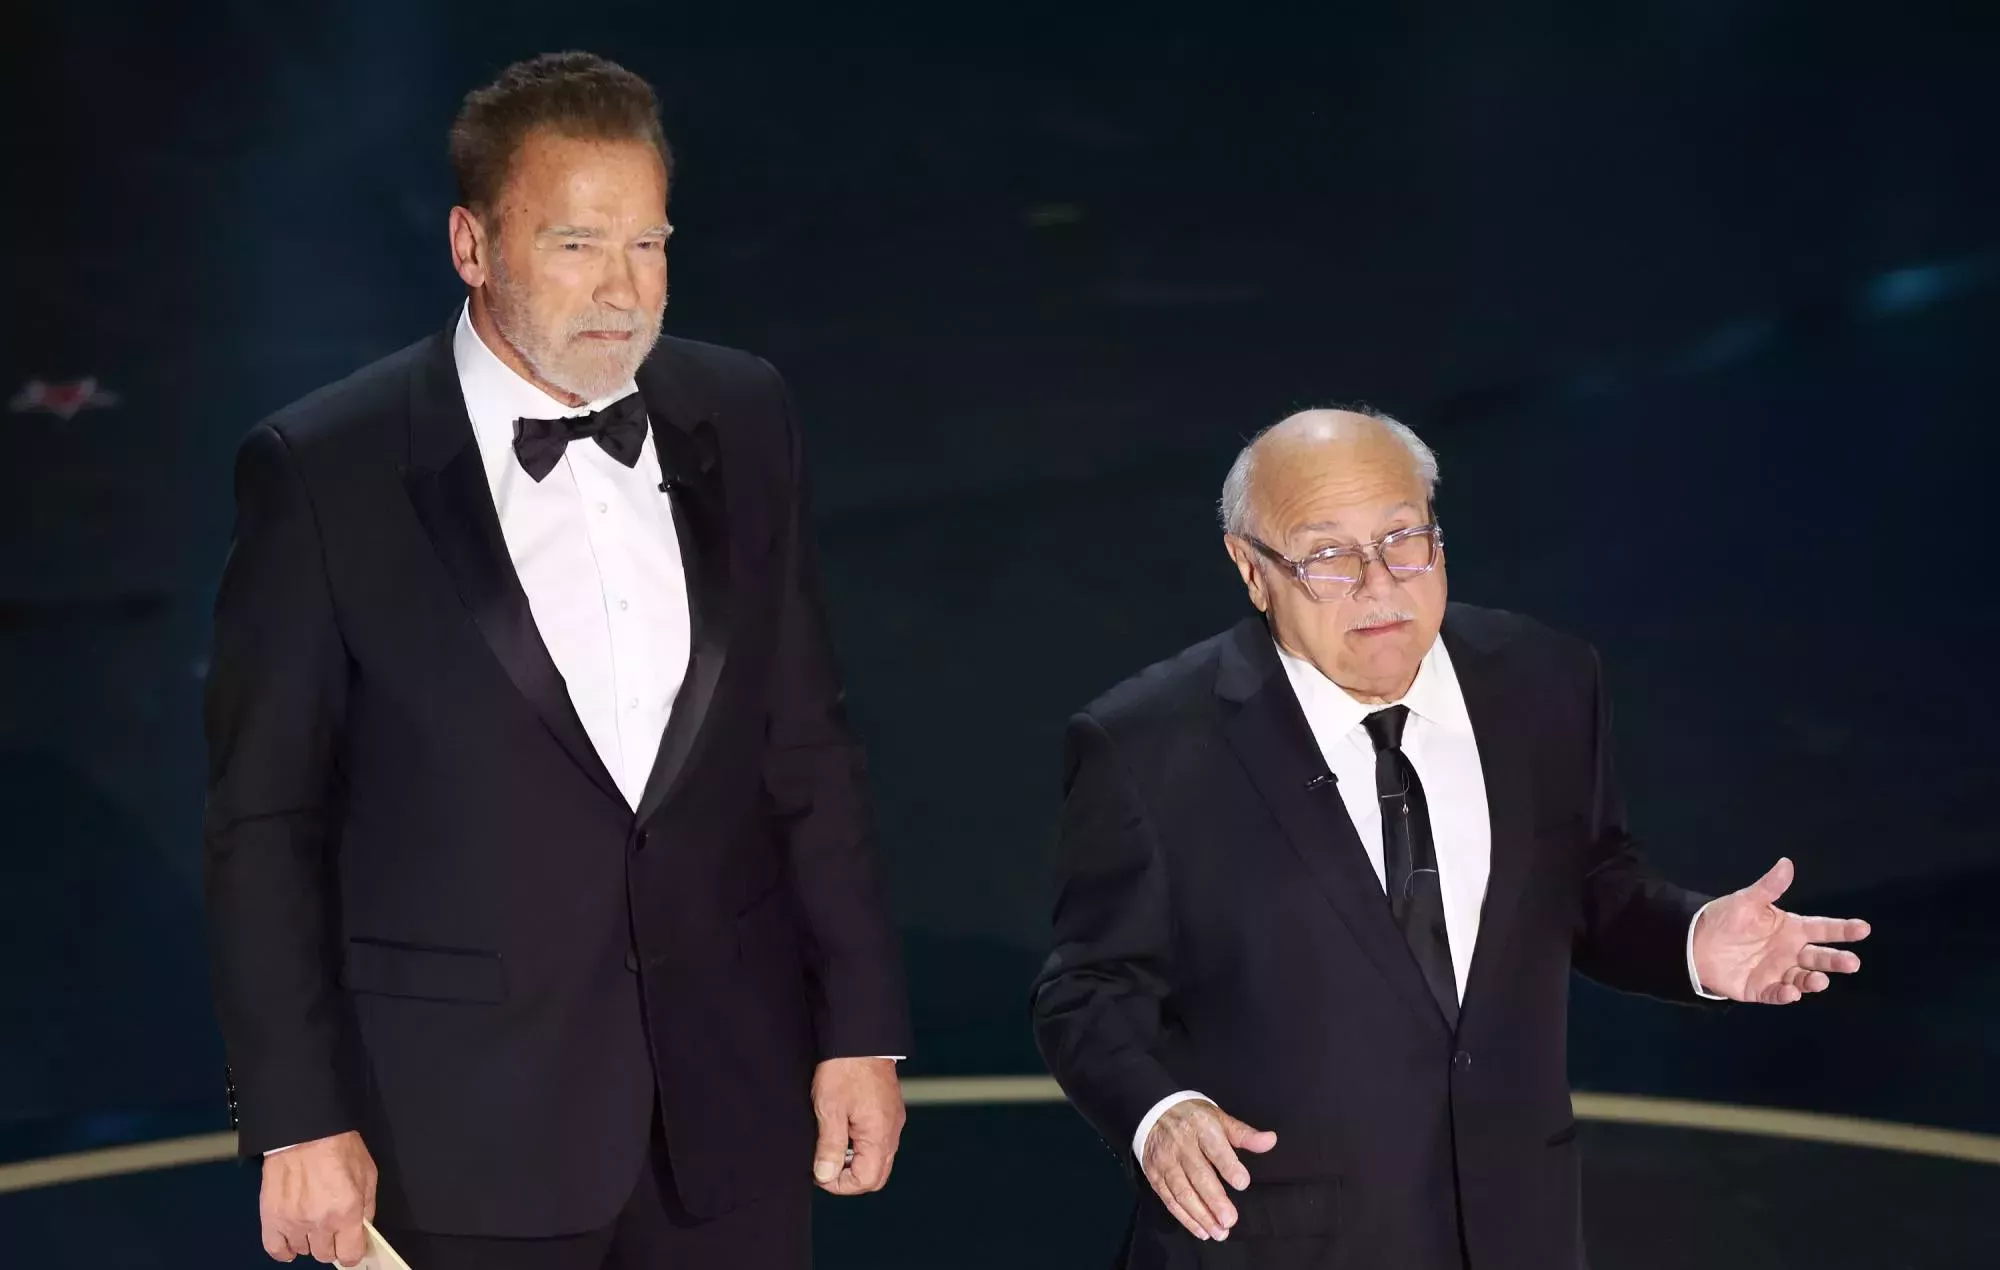 Danny DeVito y Arnold Schwarzenegger reprenden a Michael Keaton por 'Batman' durante el reencuentro de los Oscars